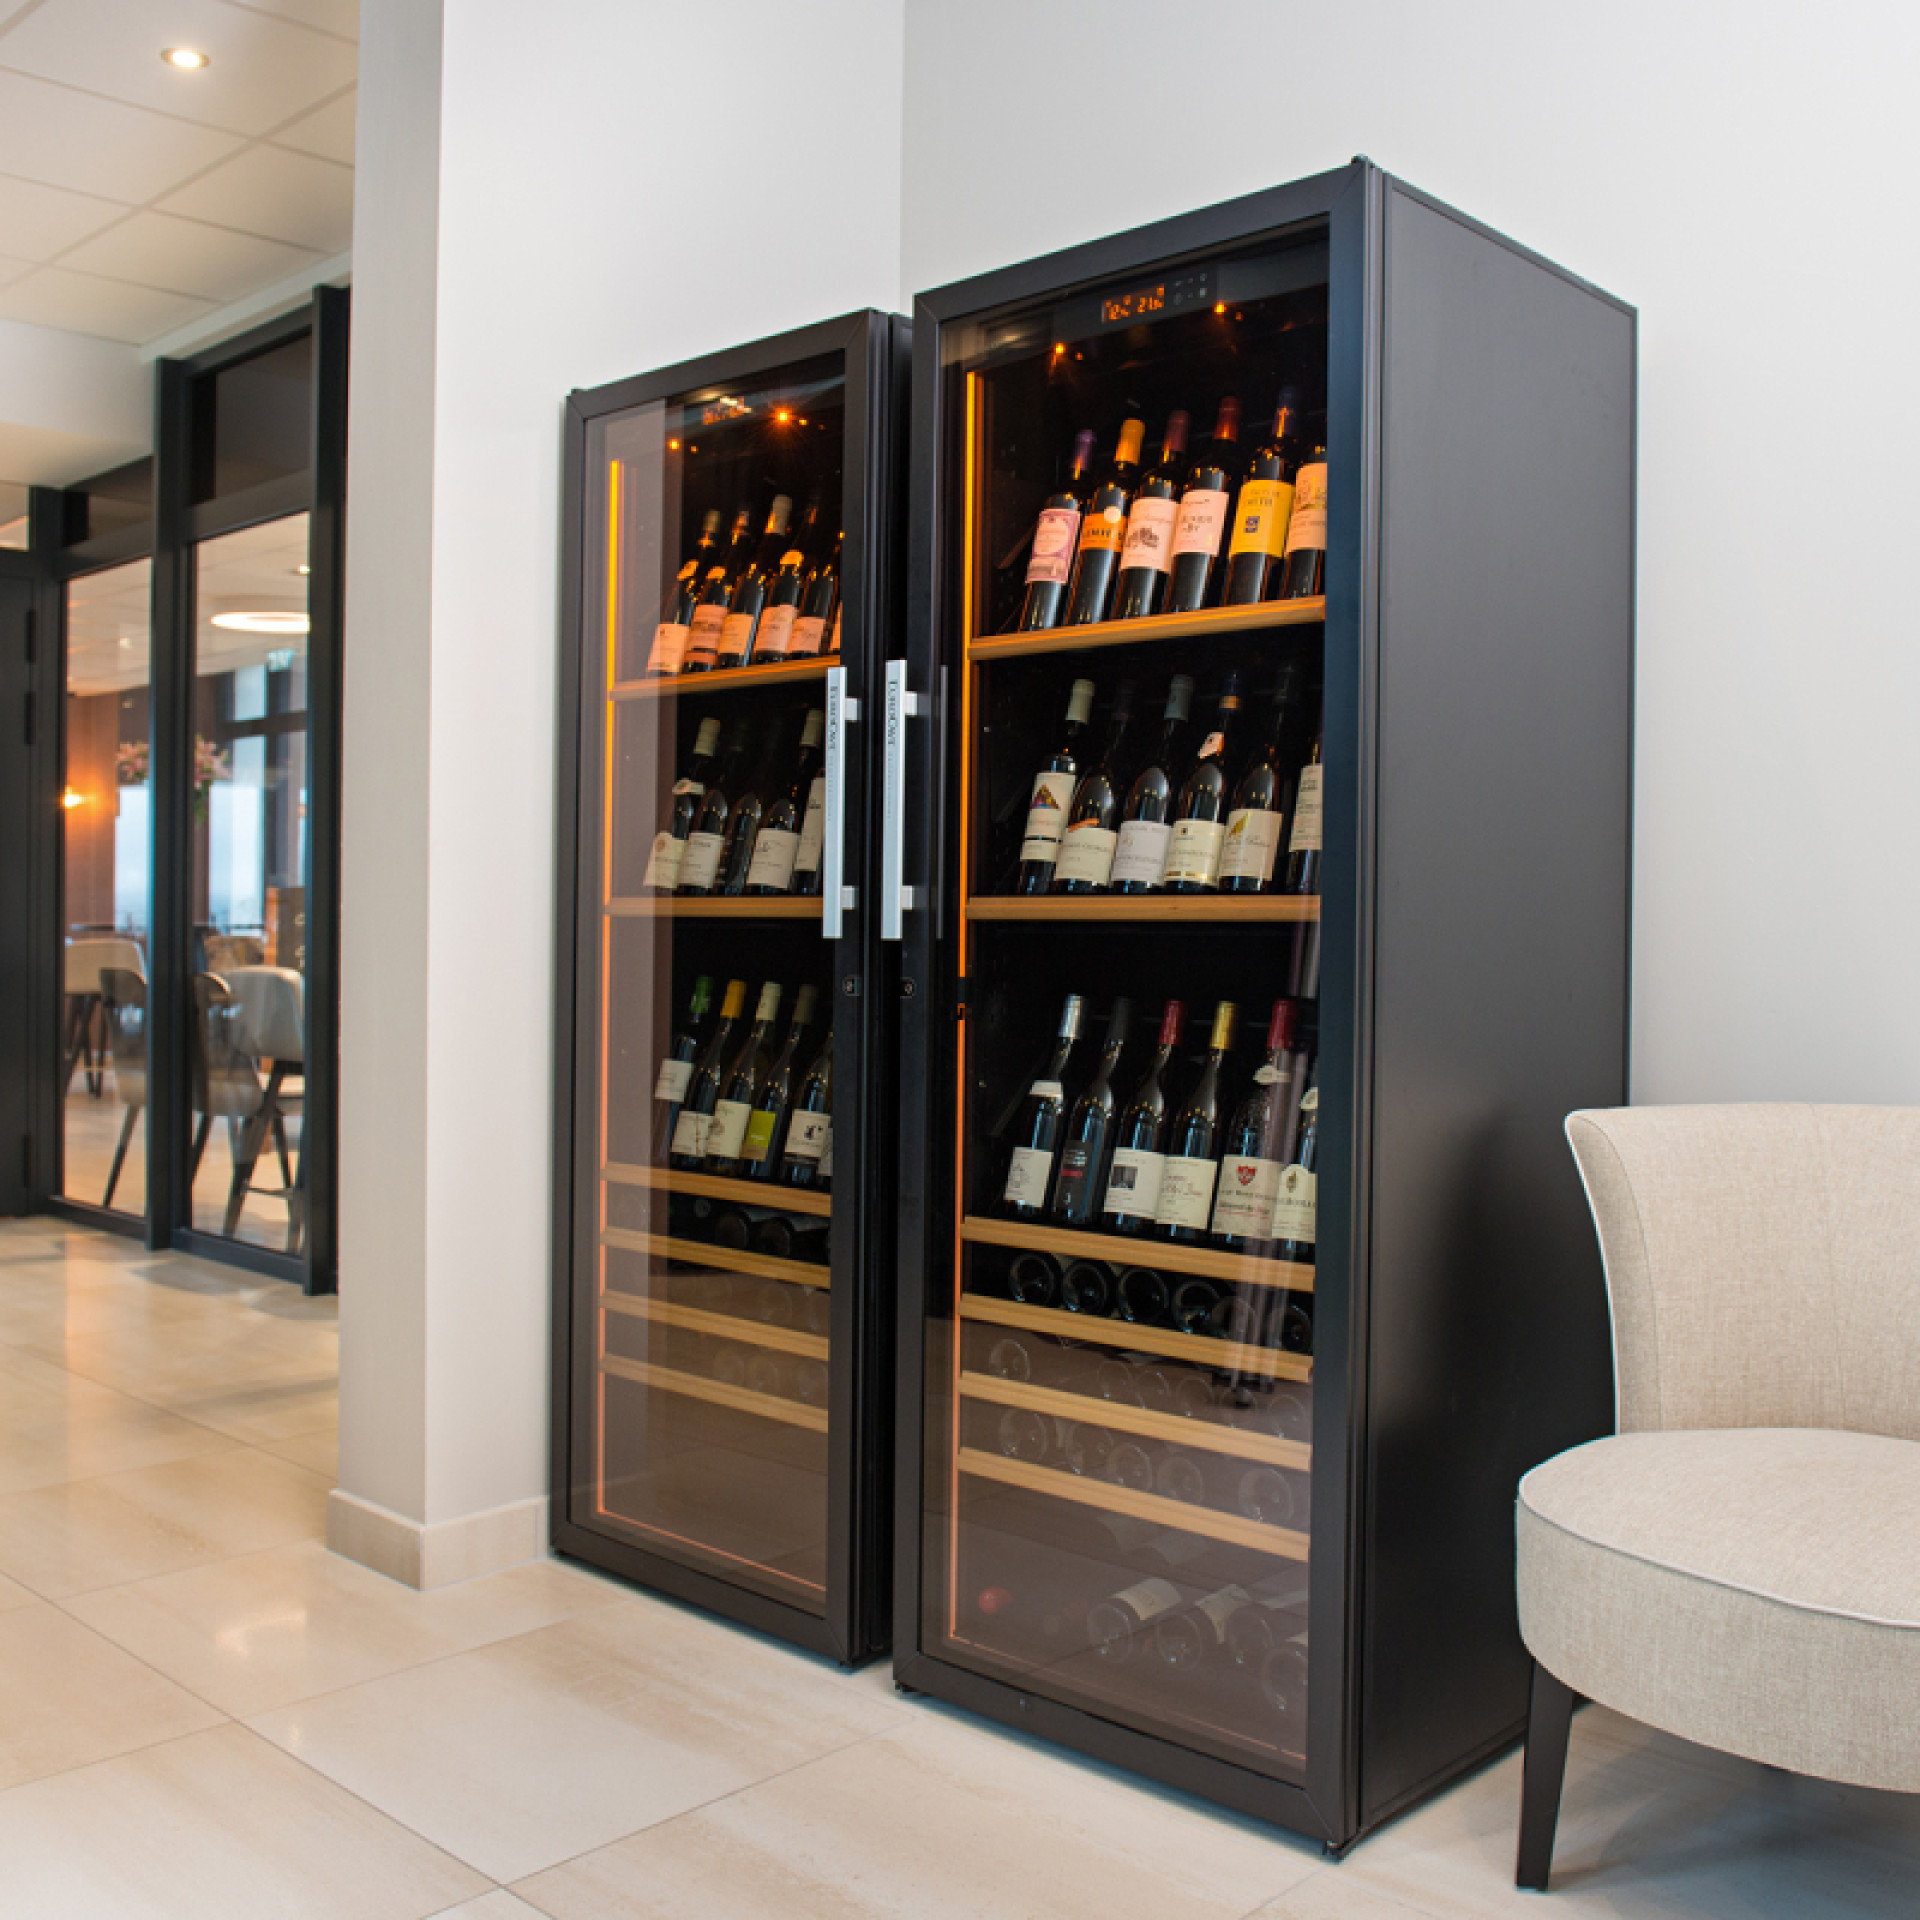 2 Weinkühlschränke, die nebeneinander installiert sind, um die Lagerkapazität von Weinen bei Serviertemperatur zu erhöhen, die zum Verzehr bereit sind.